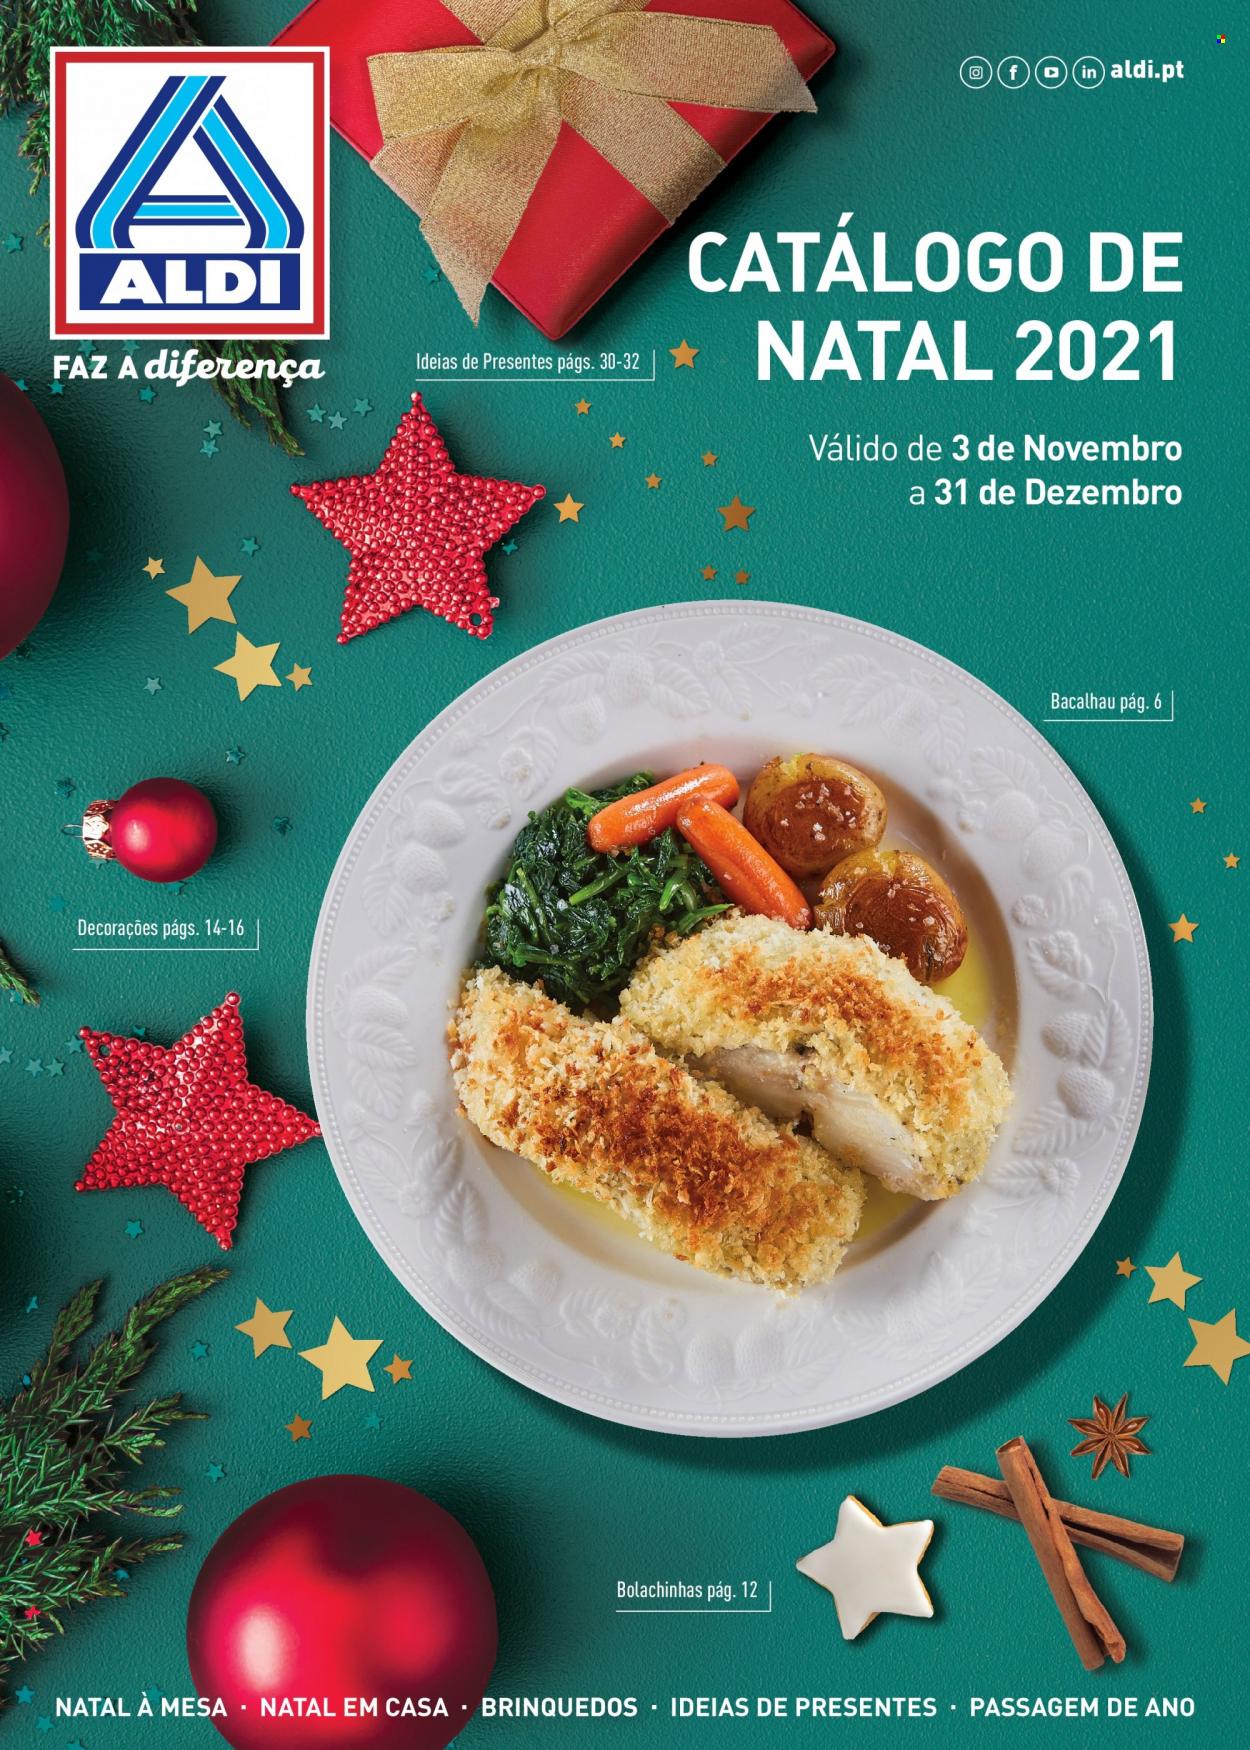 Folheto Aldi - 3.11.2021 - 31.12.2021 - Produtos em promoção - bacalhau, brinquedo. Página 1.